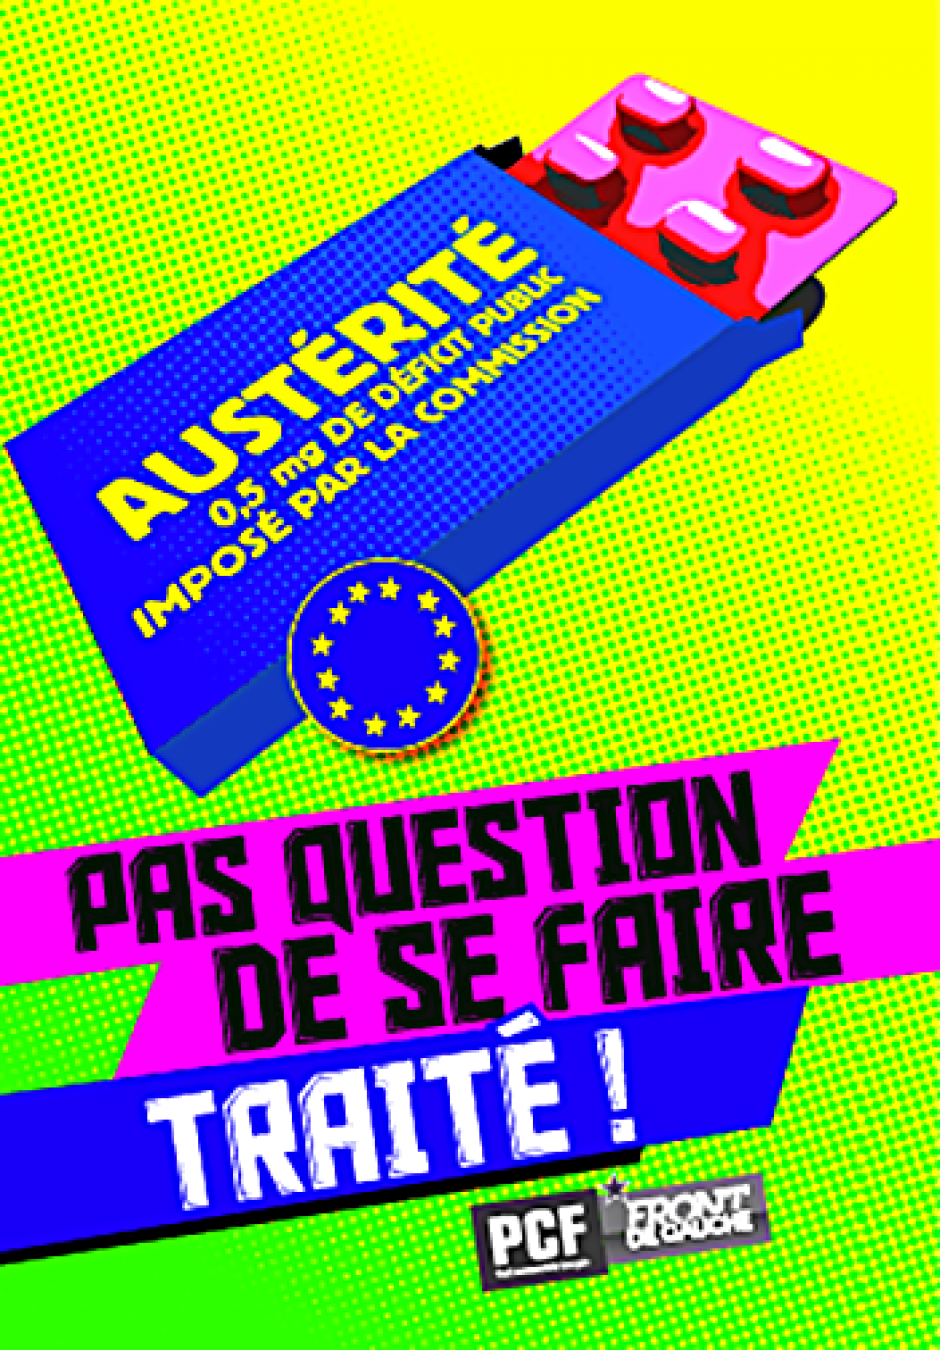 19 octobre, Mouy - Assemblée citoyenne sur le thème du traité européen austéritaire